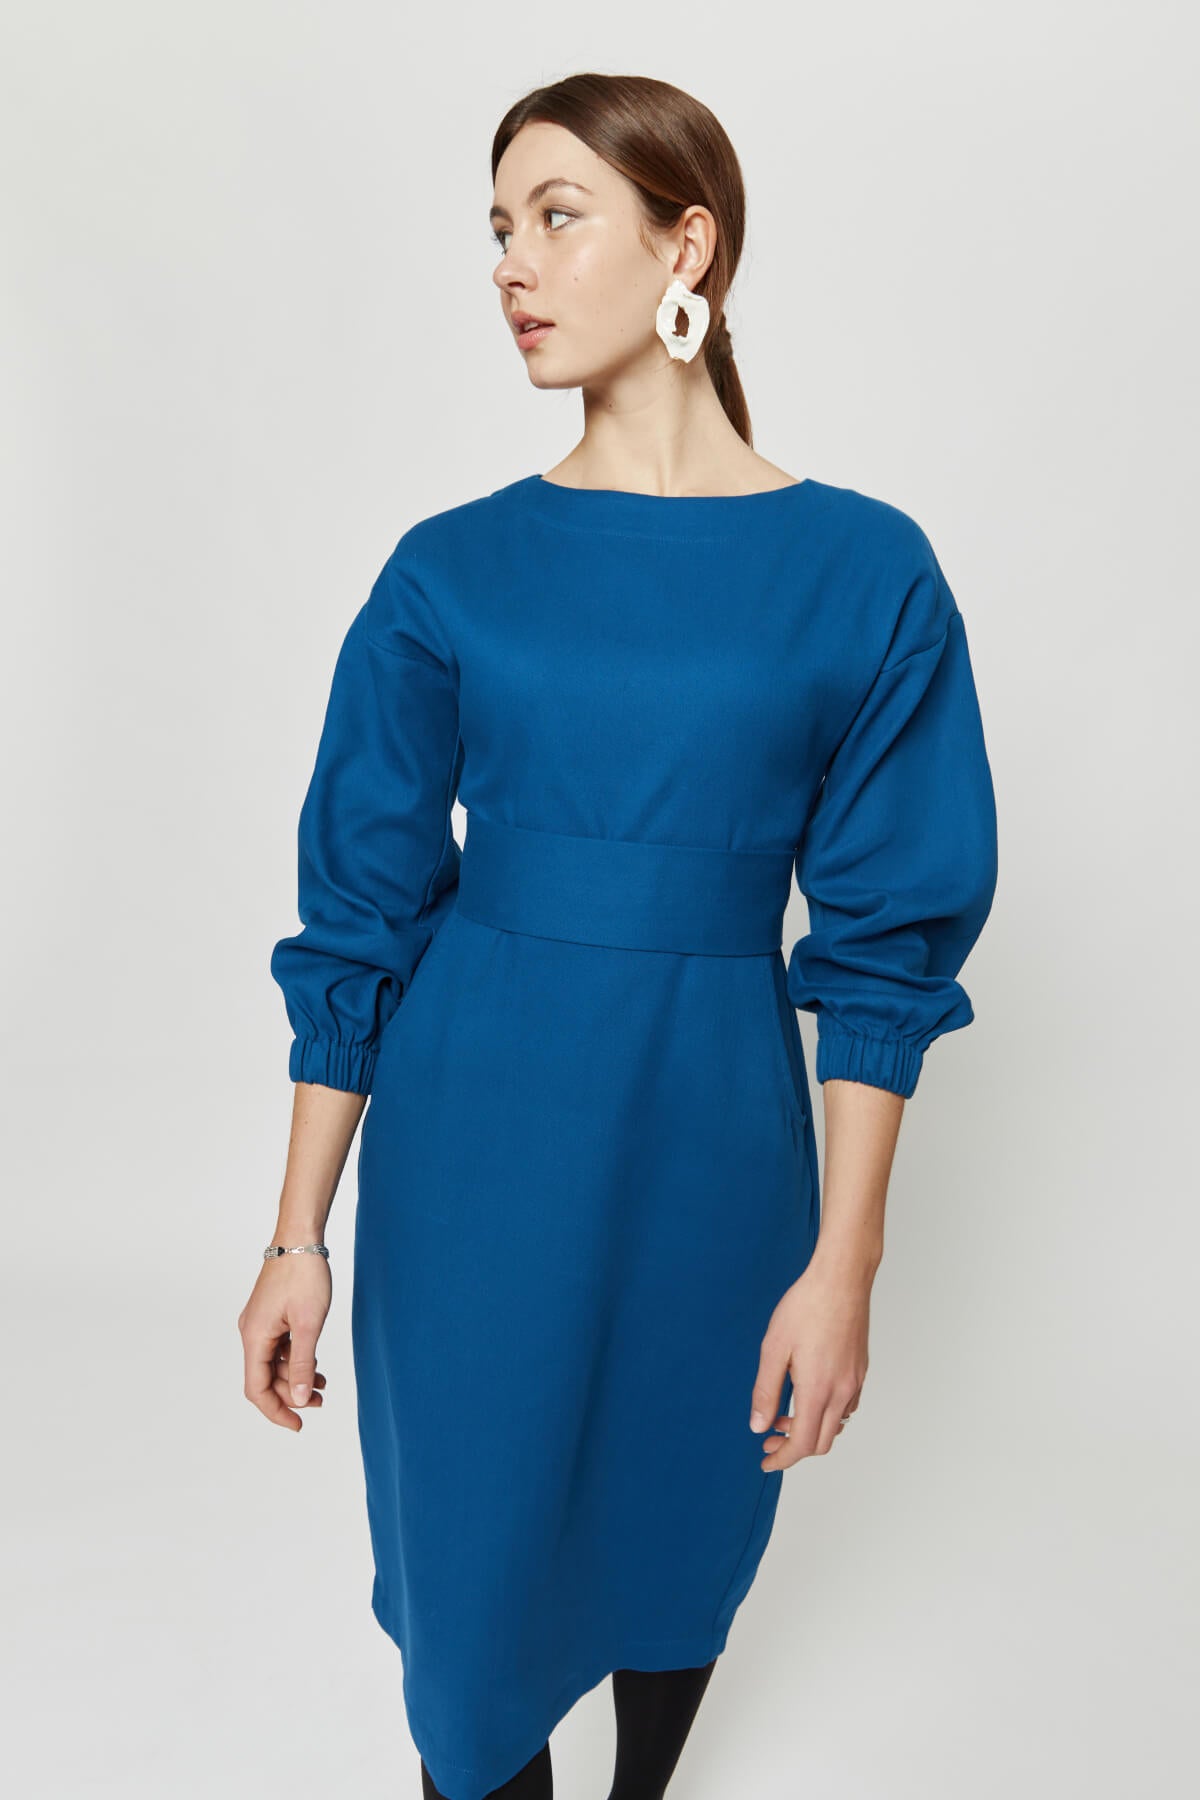 langärmliges Kleid festlich winterkleid blau